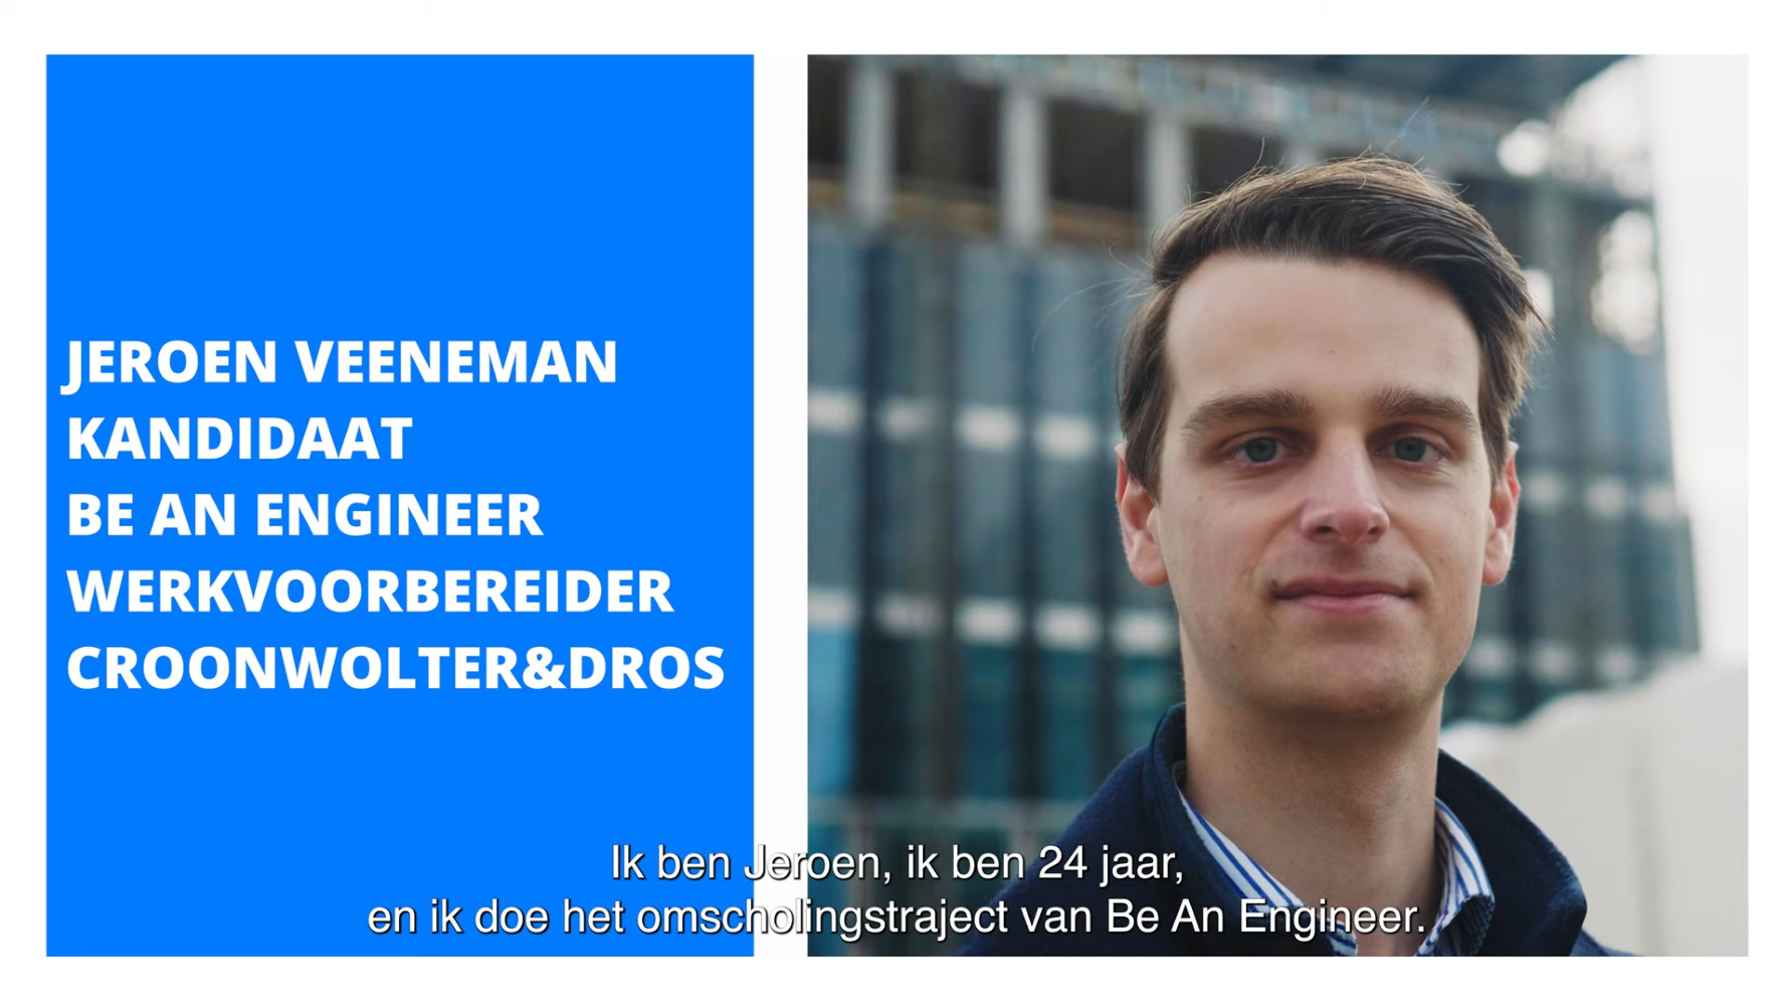 Bekijk het verhaal van  Jeroen Veeneman, kandidaat Be an engineer en werkvoorbereider Croonwolter&dros